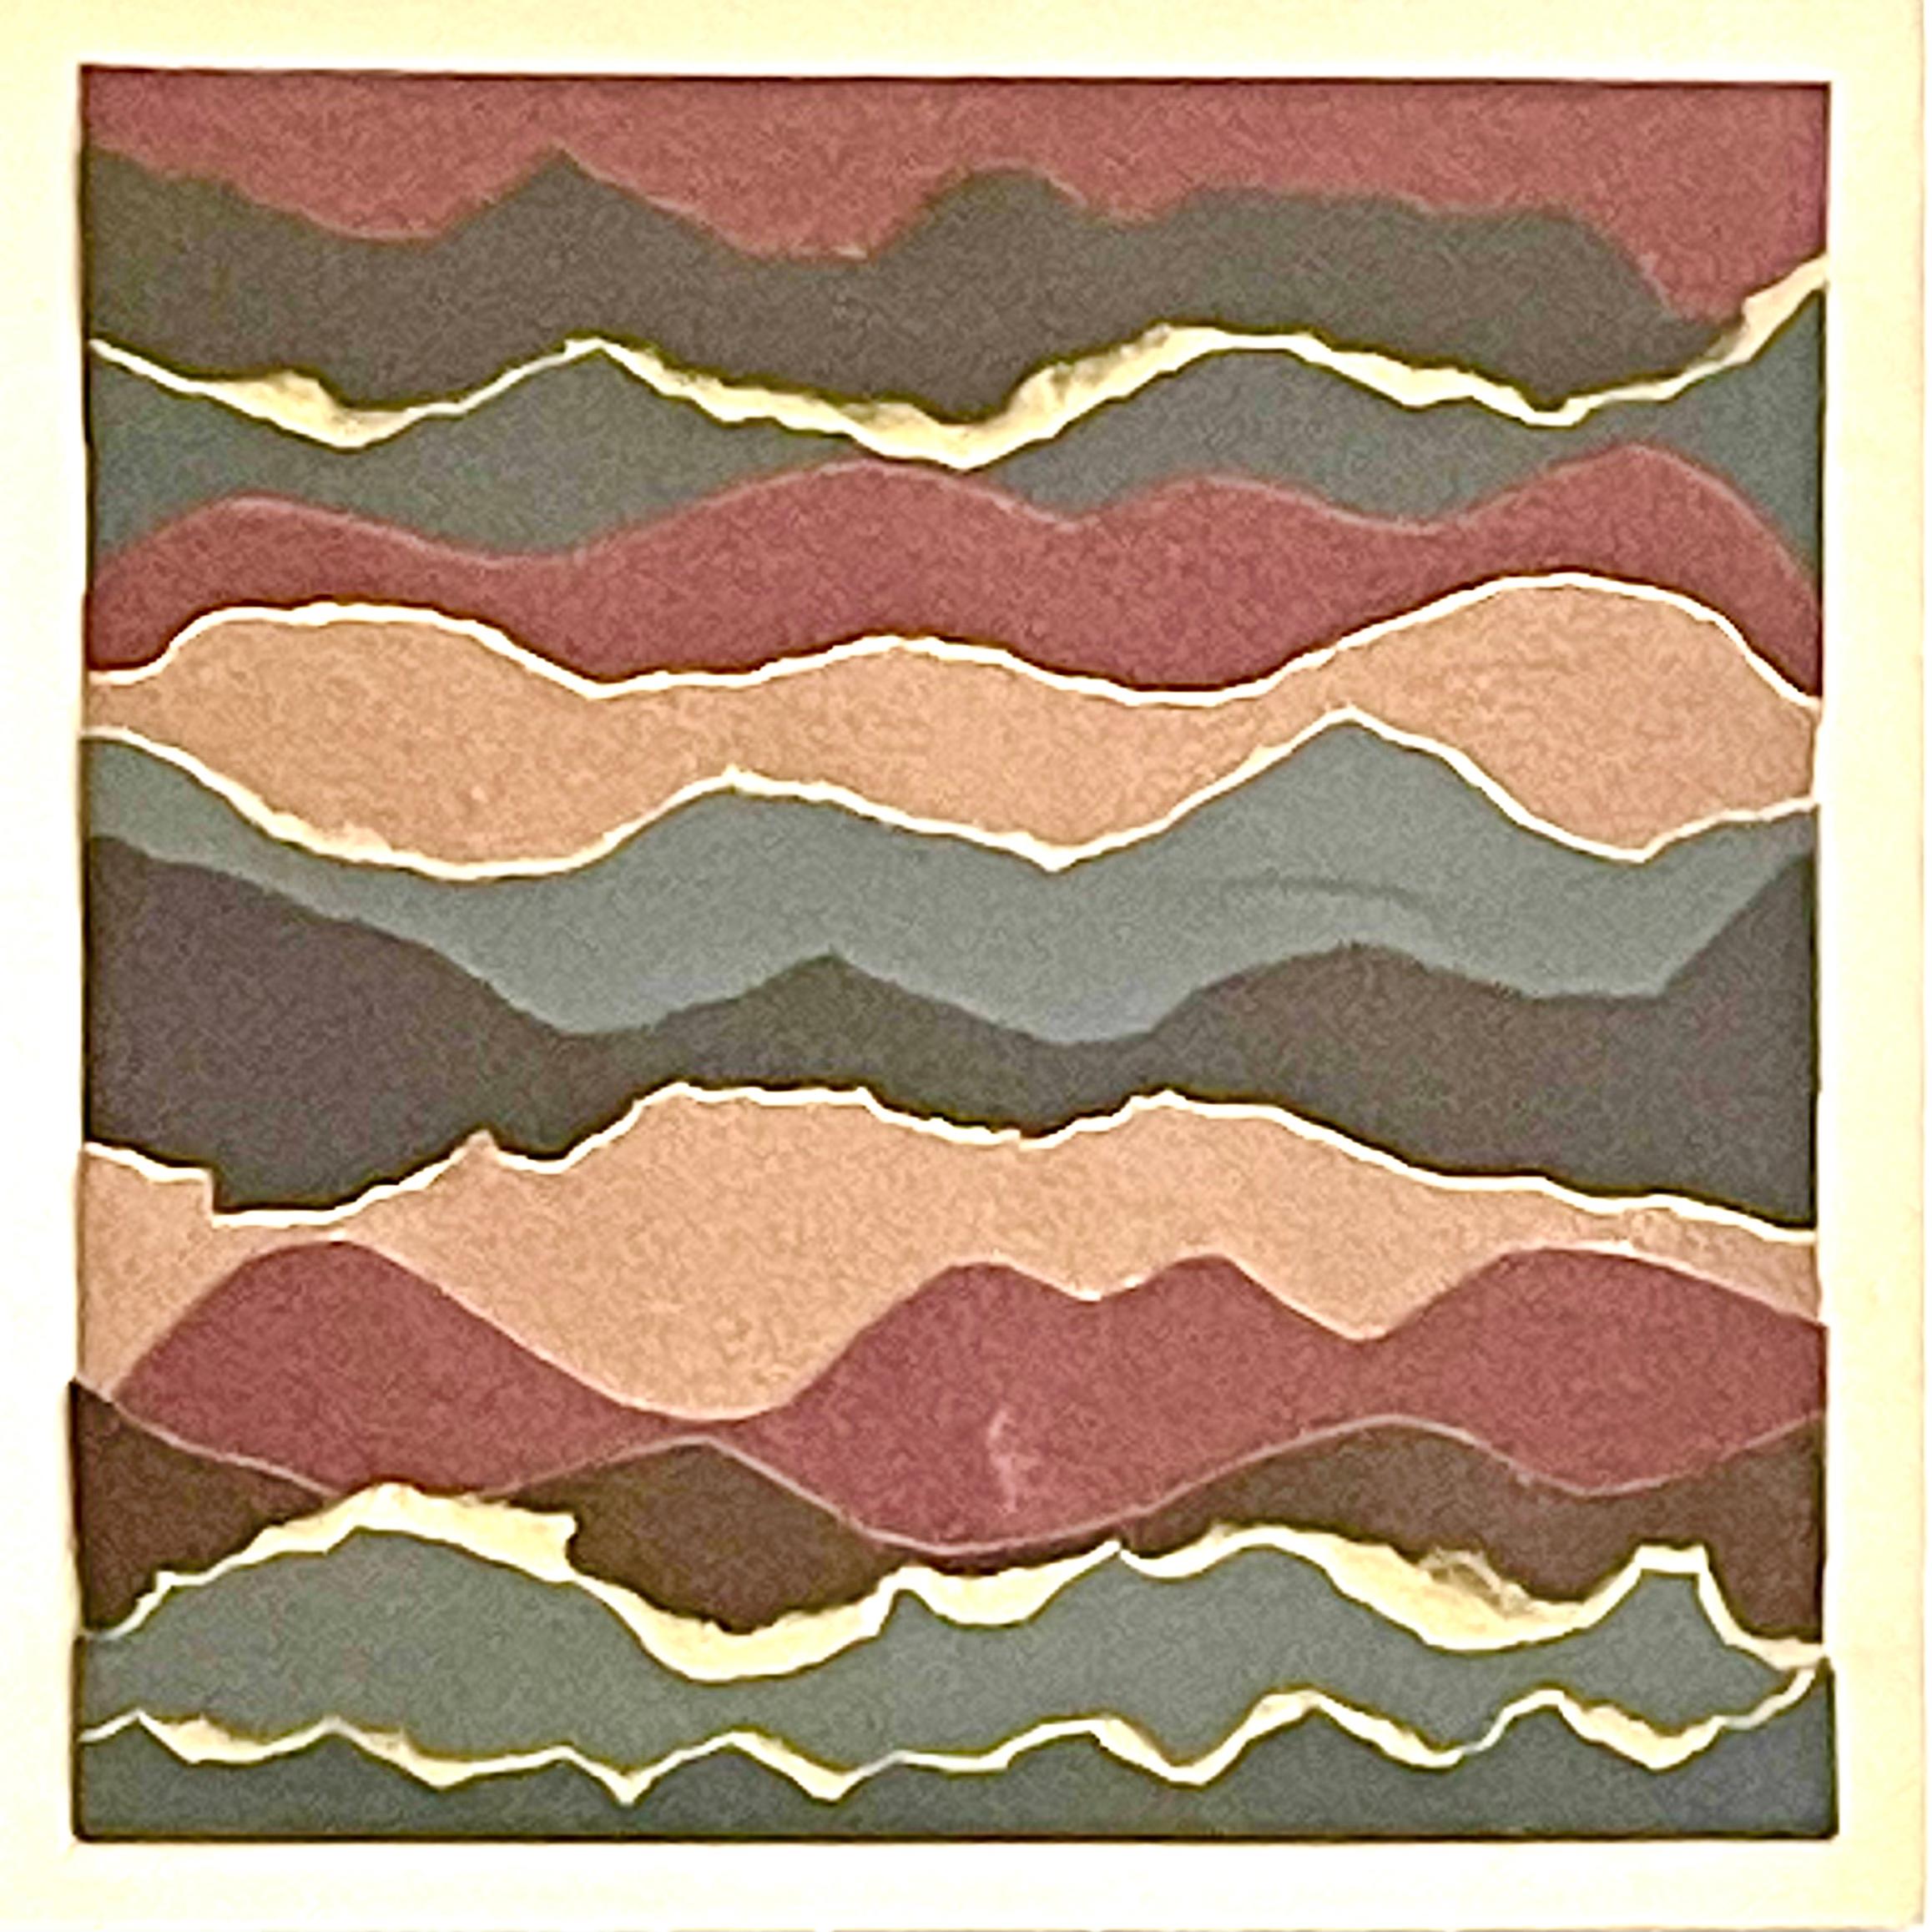 Fluctus 5 - Collage papier sur panneau de bois, paysage marin abstrait, rouge, gris et marron - Mixed Media Art de Marie Laforey